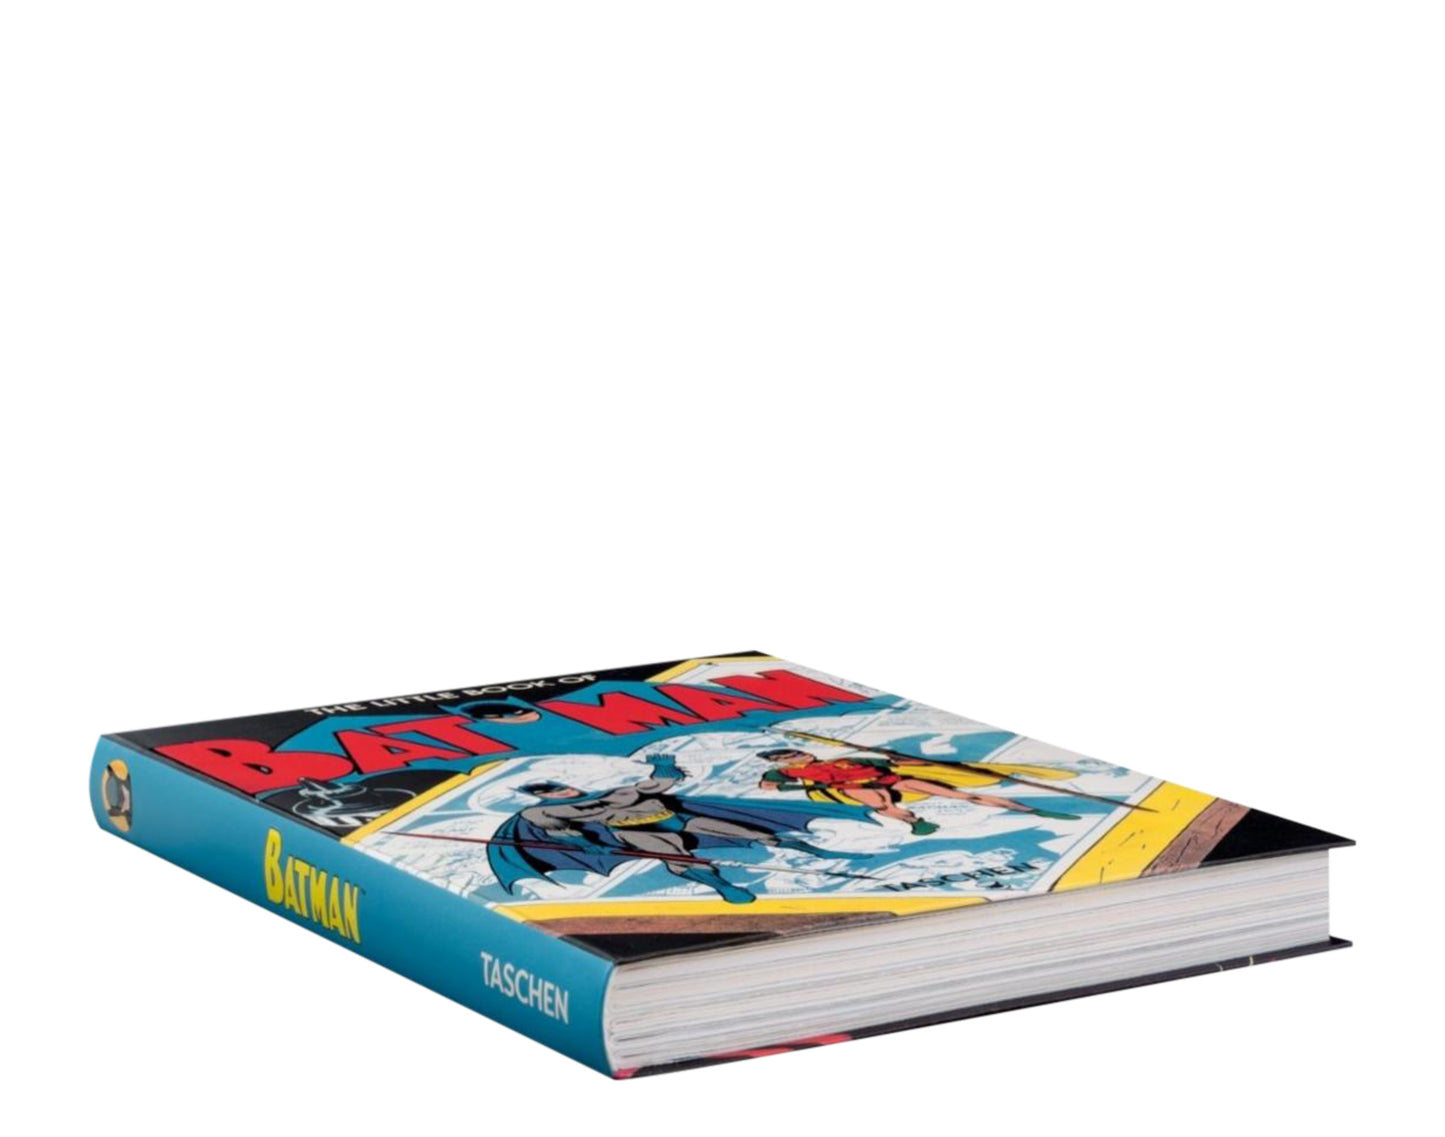 Taschen Books - The Little Book of Batman Flexicover Book